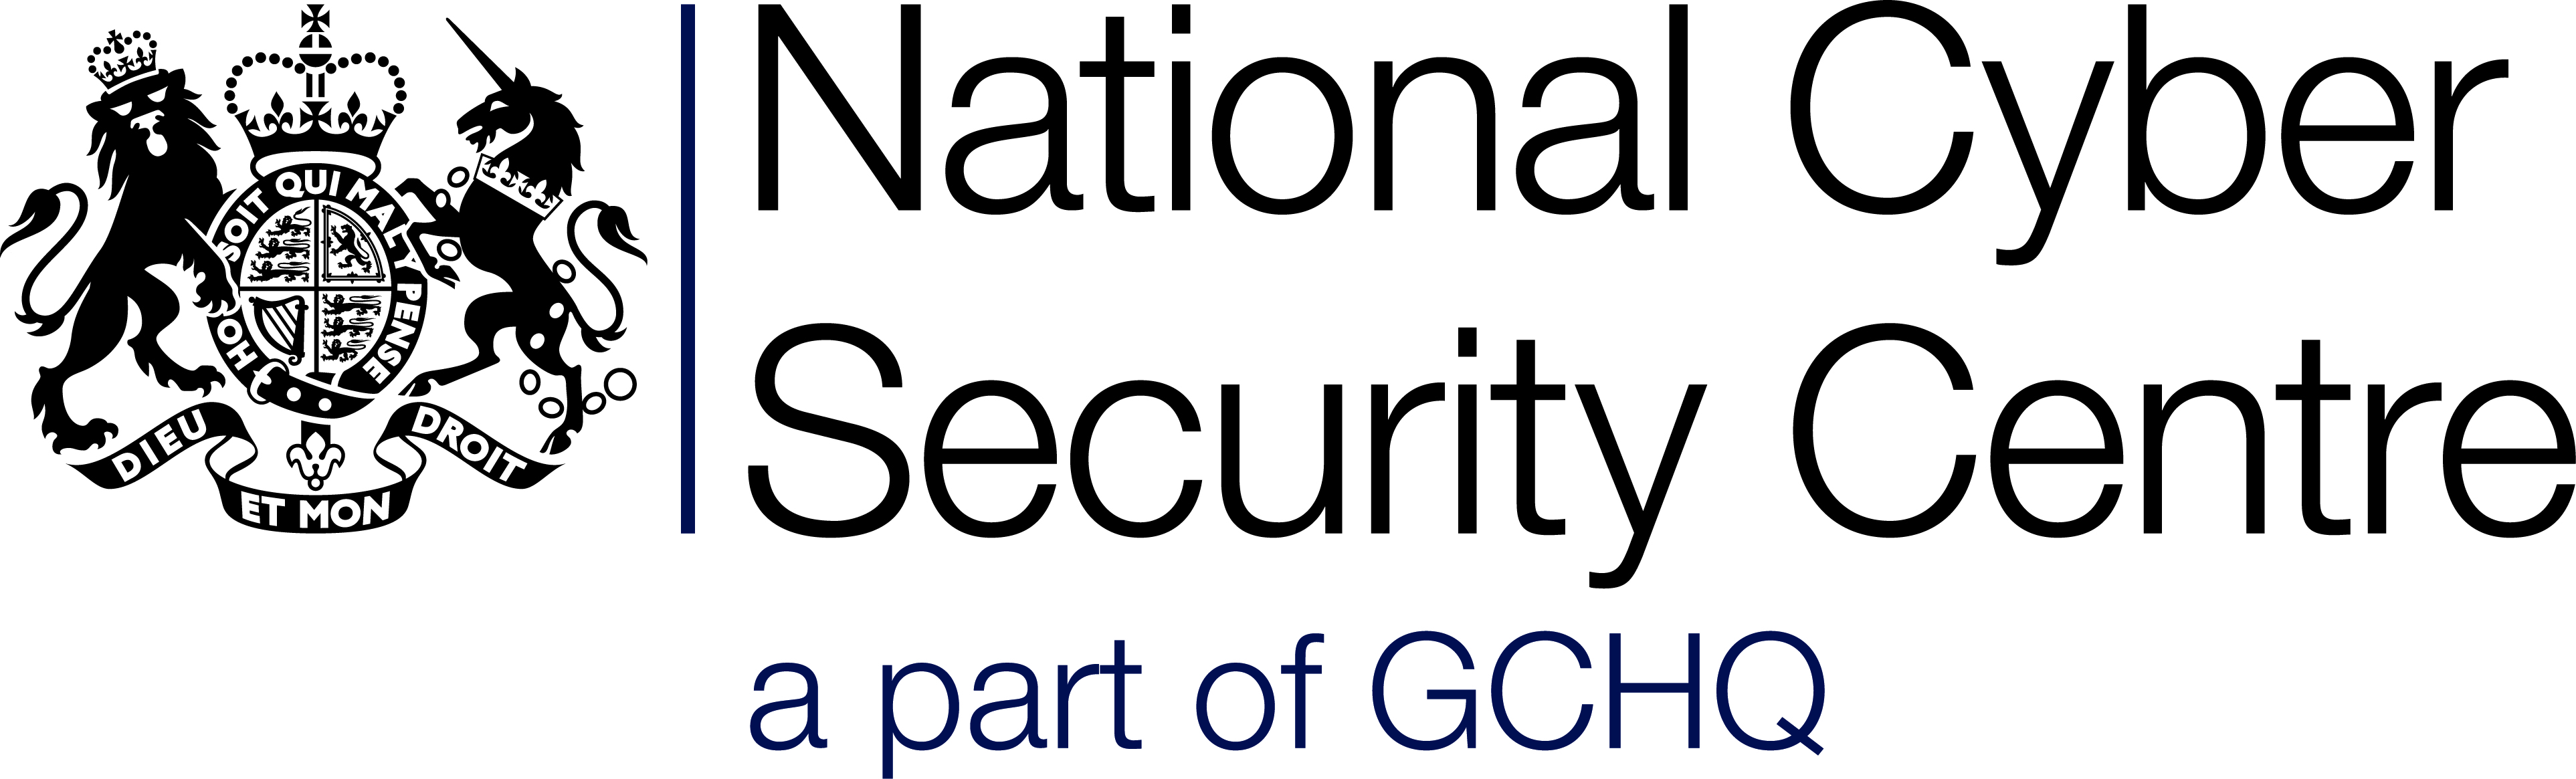 Национальная безопасность великобритании. National Cyber Security Centre. NCSC (национальный центр кибербезопасности Великобритании):. Эмблемы GCHQ. Информационная безопасность Великобритании.